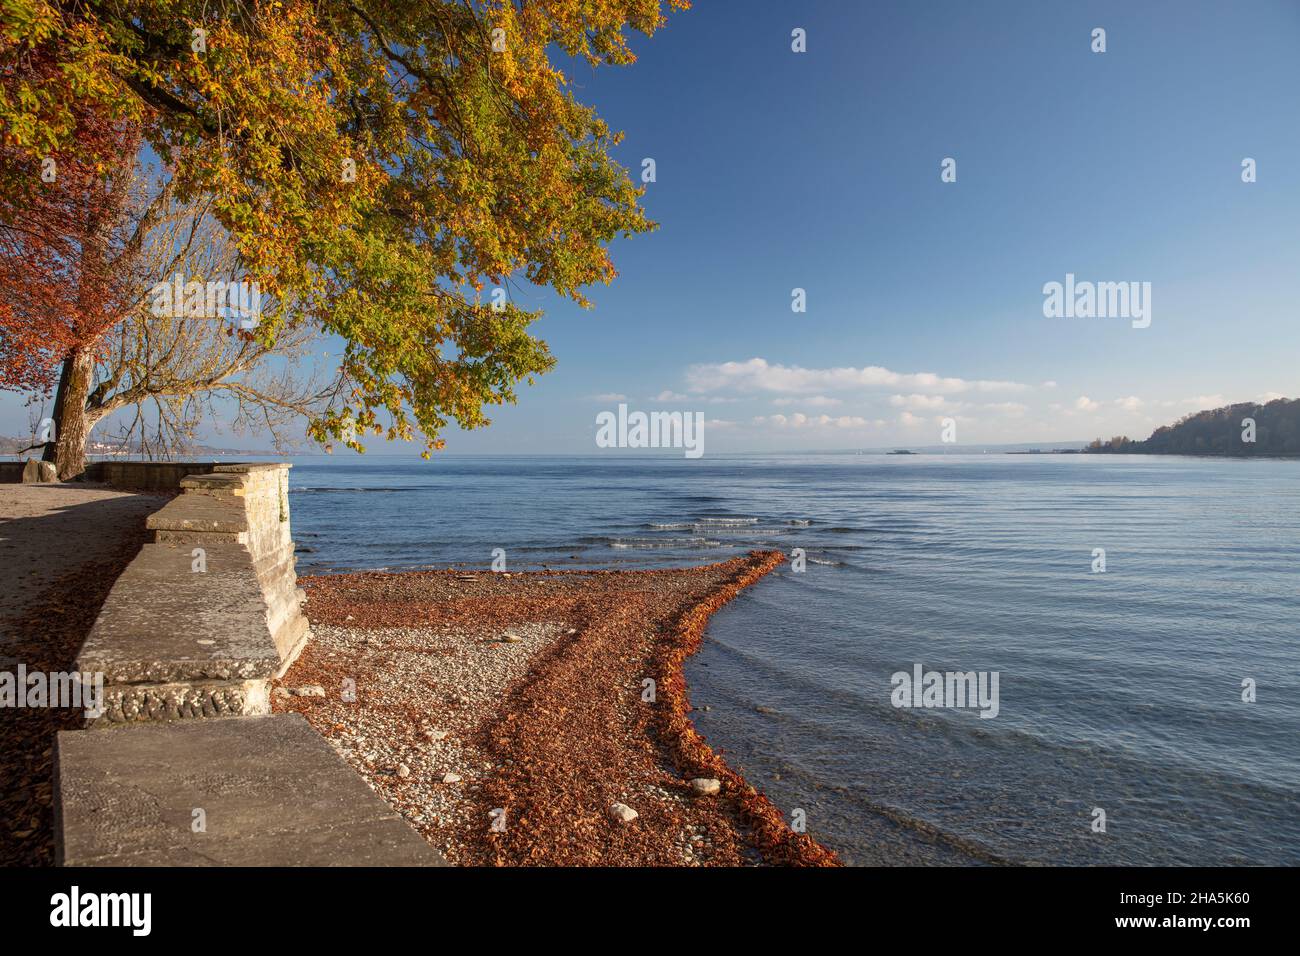 lago di costanza,mainau,isola,autunno dorato,estate indiana, Foto Stock